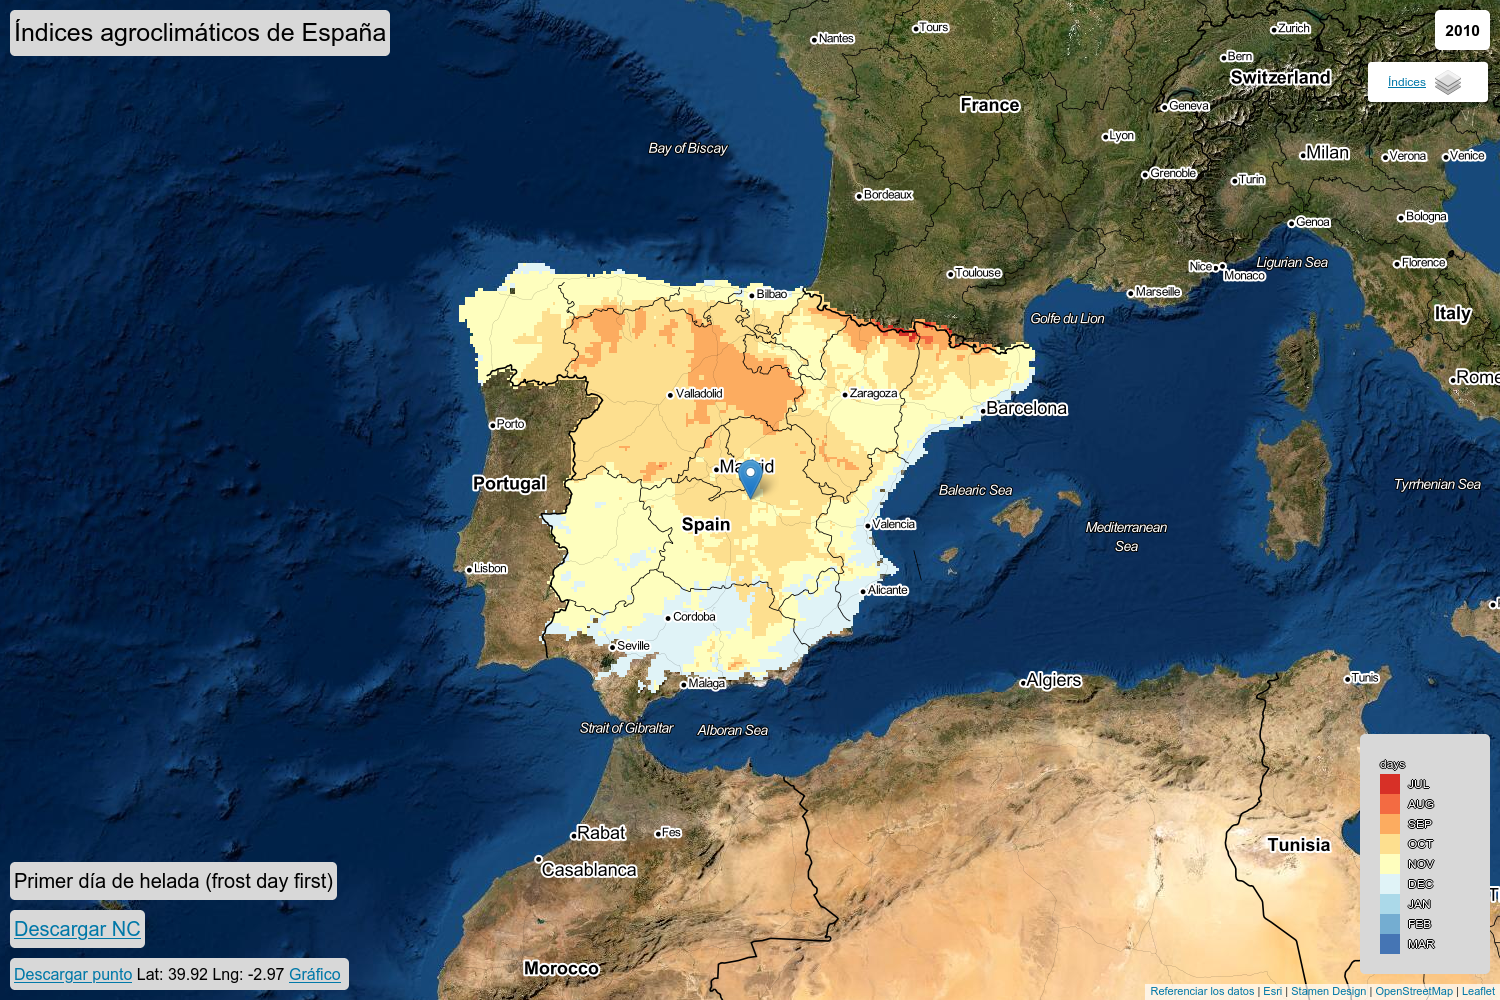 Spanish agroclimatic indices database